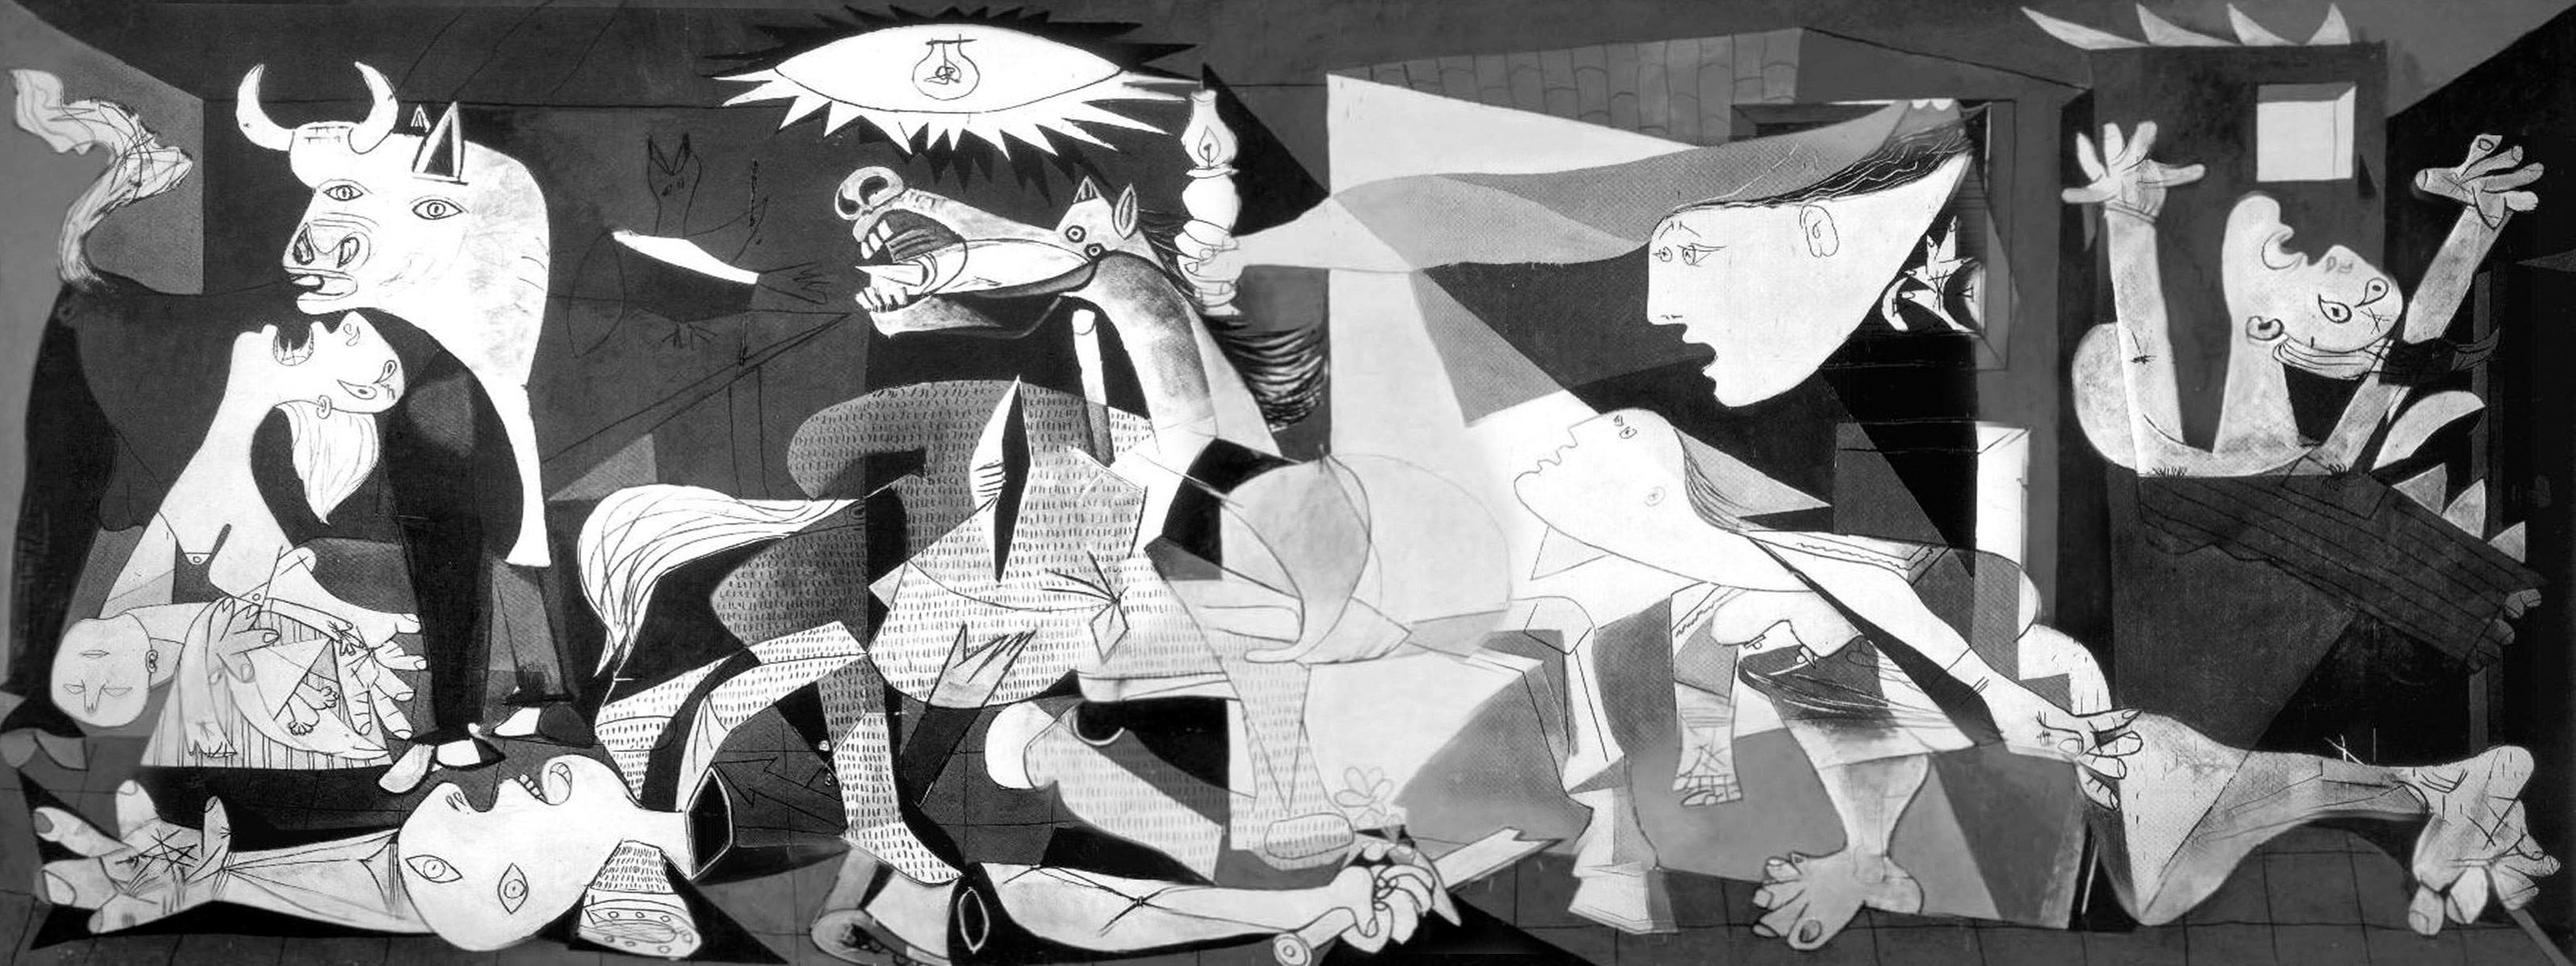 الجورنيكا - Guernica - مقهى جرير الثقافي